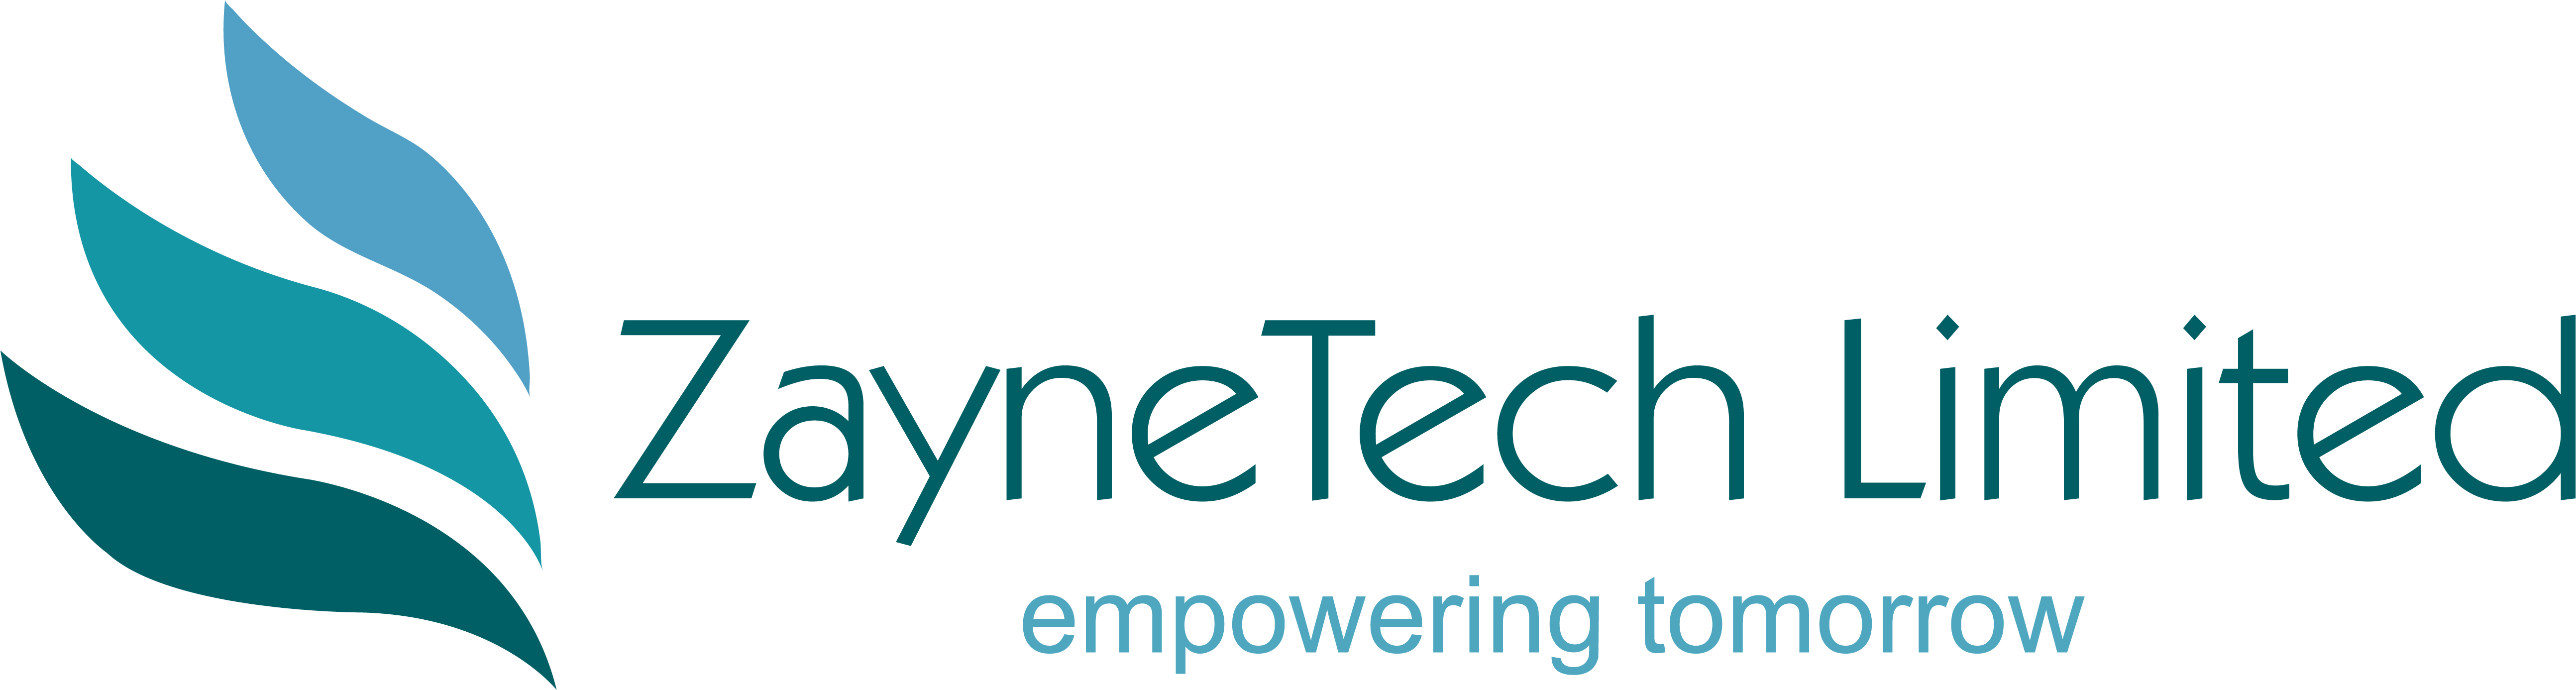 ZayneTech Limited